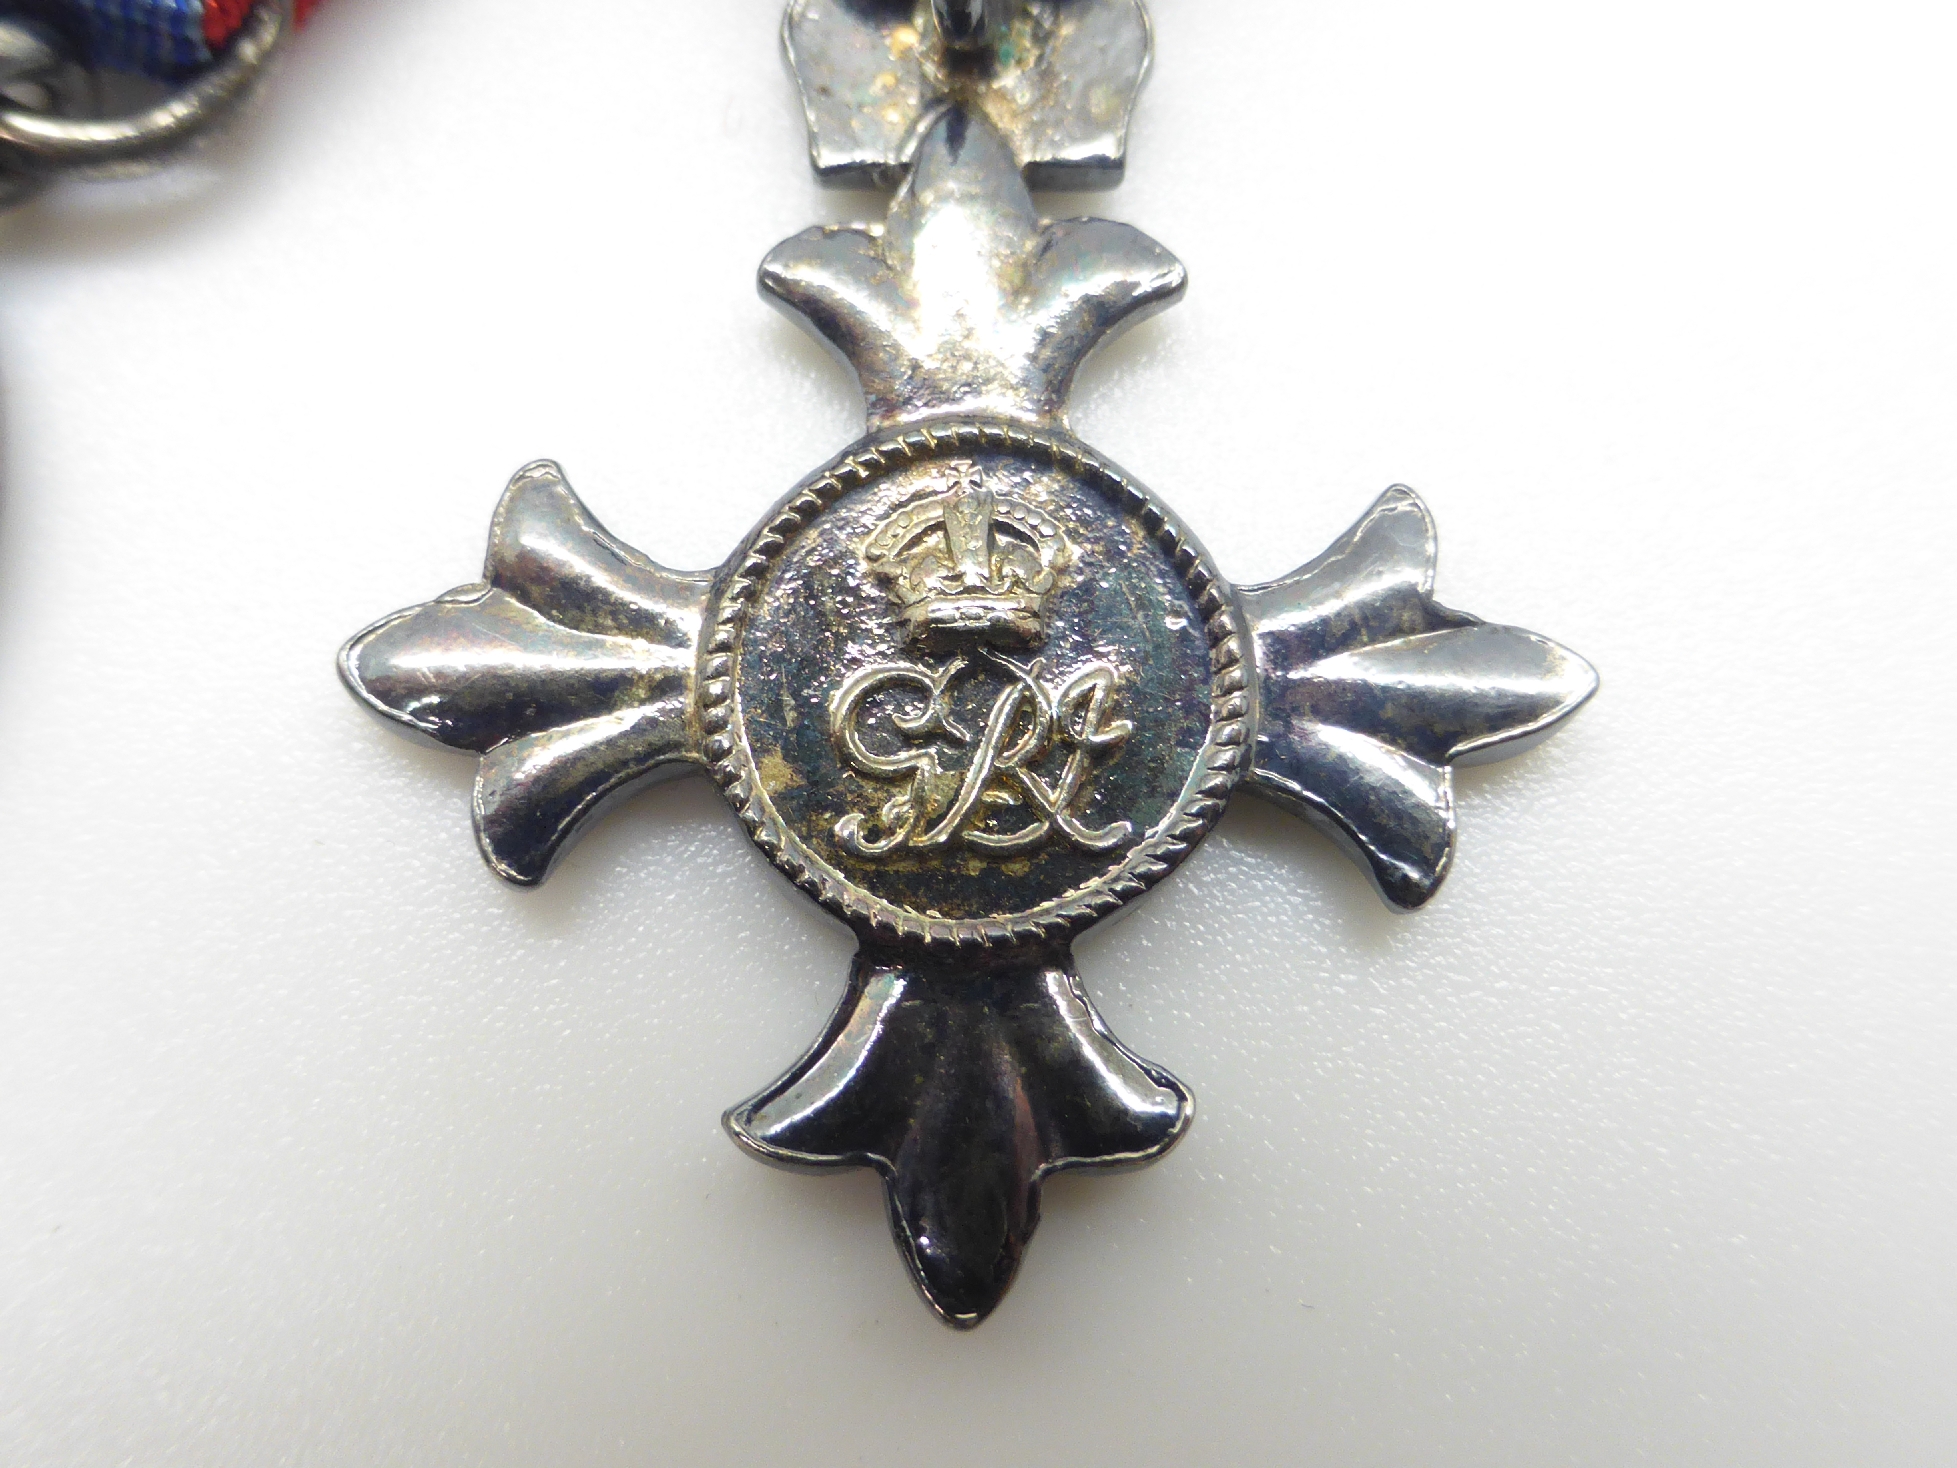 Elizabeth II Imperial Service Medal named to Mrs Jean Margaret Rose together with a WWII War Medal - Image 37 of 47